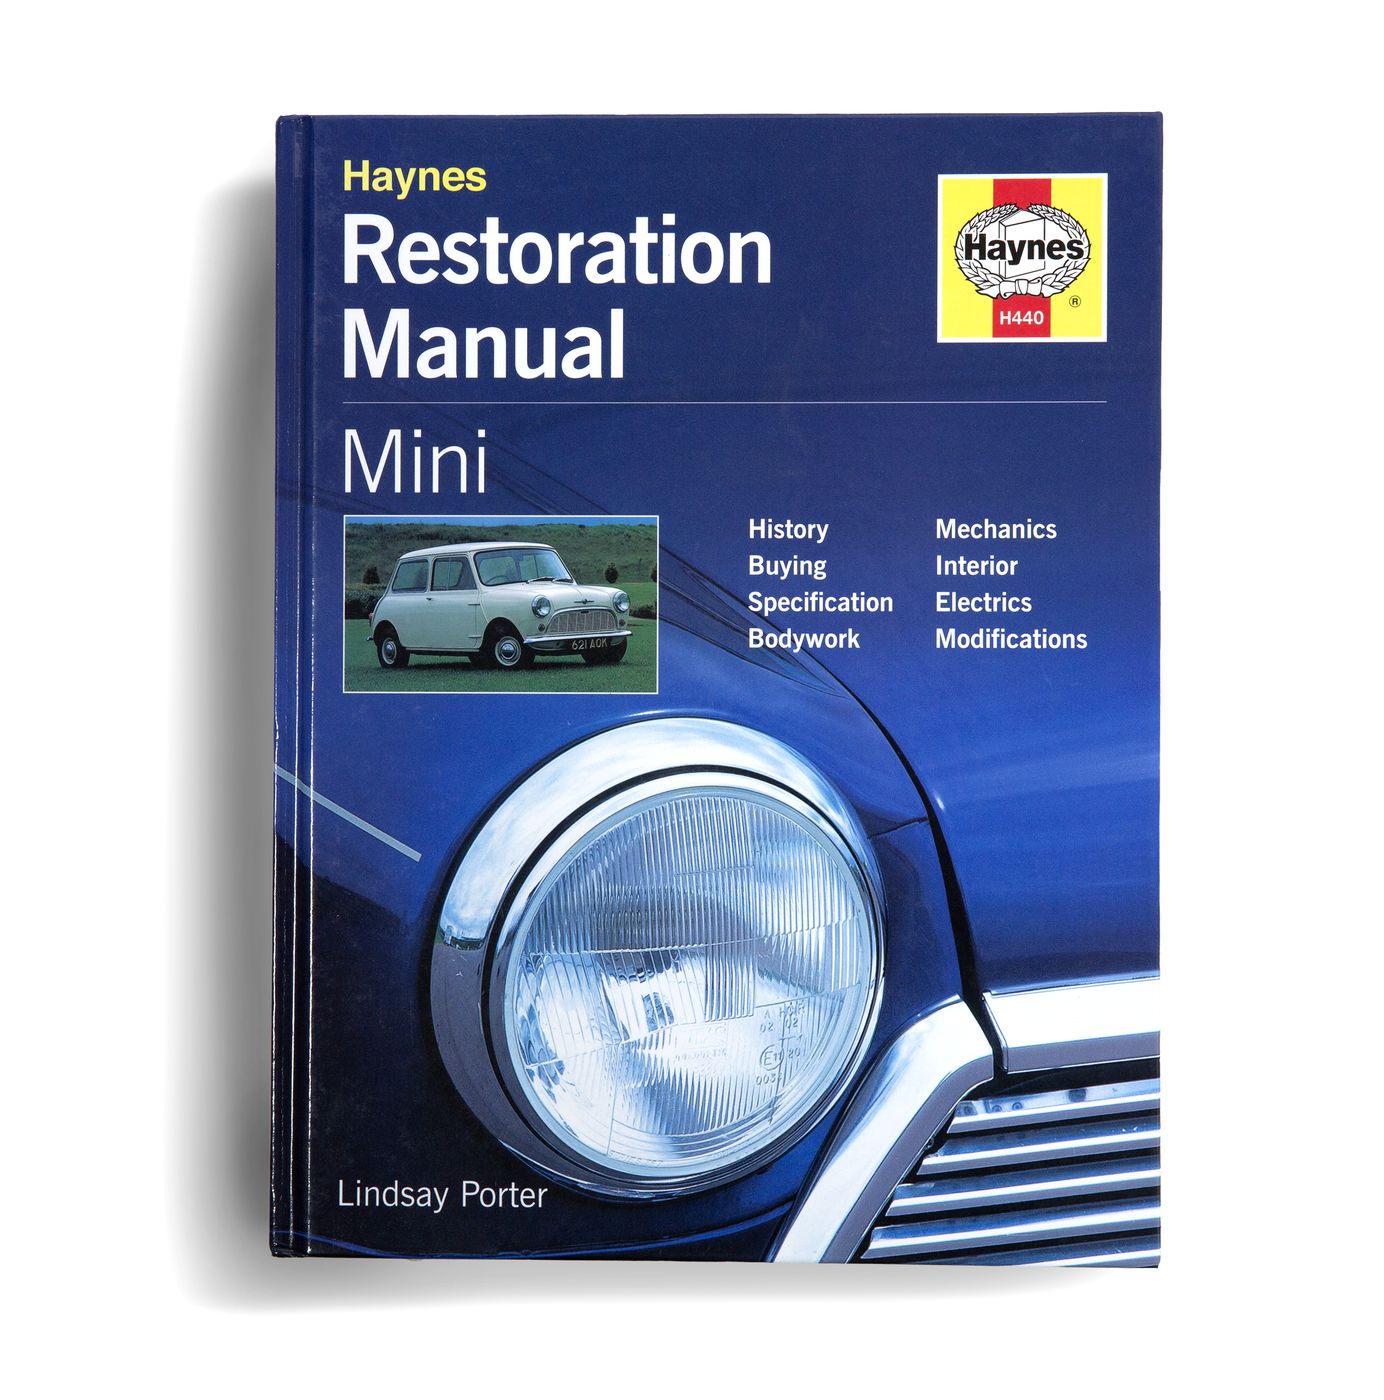 Restaurationsanleitung
Restoration instructions
Instructions de 